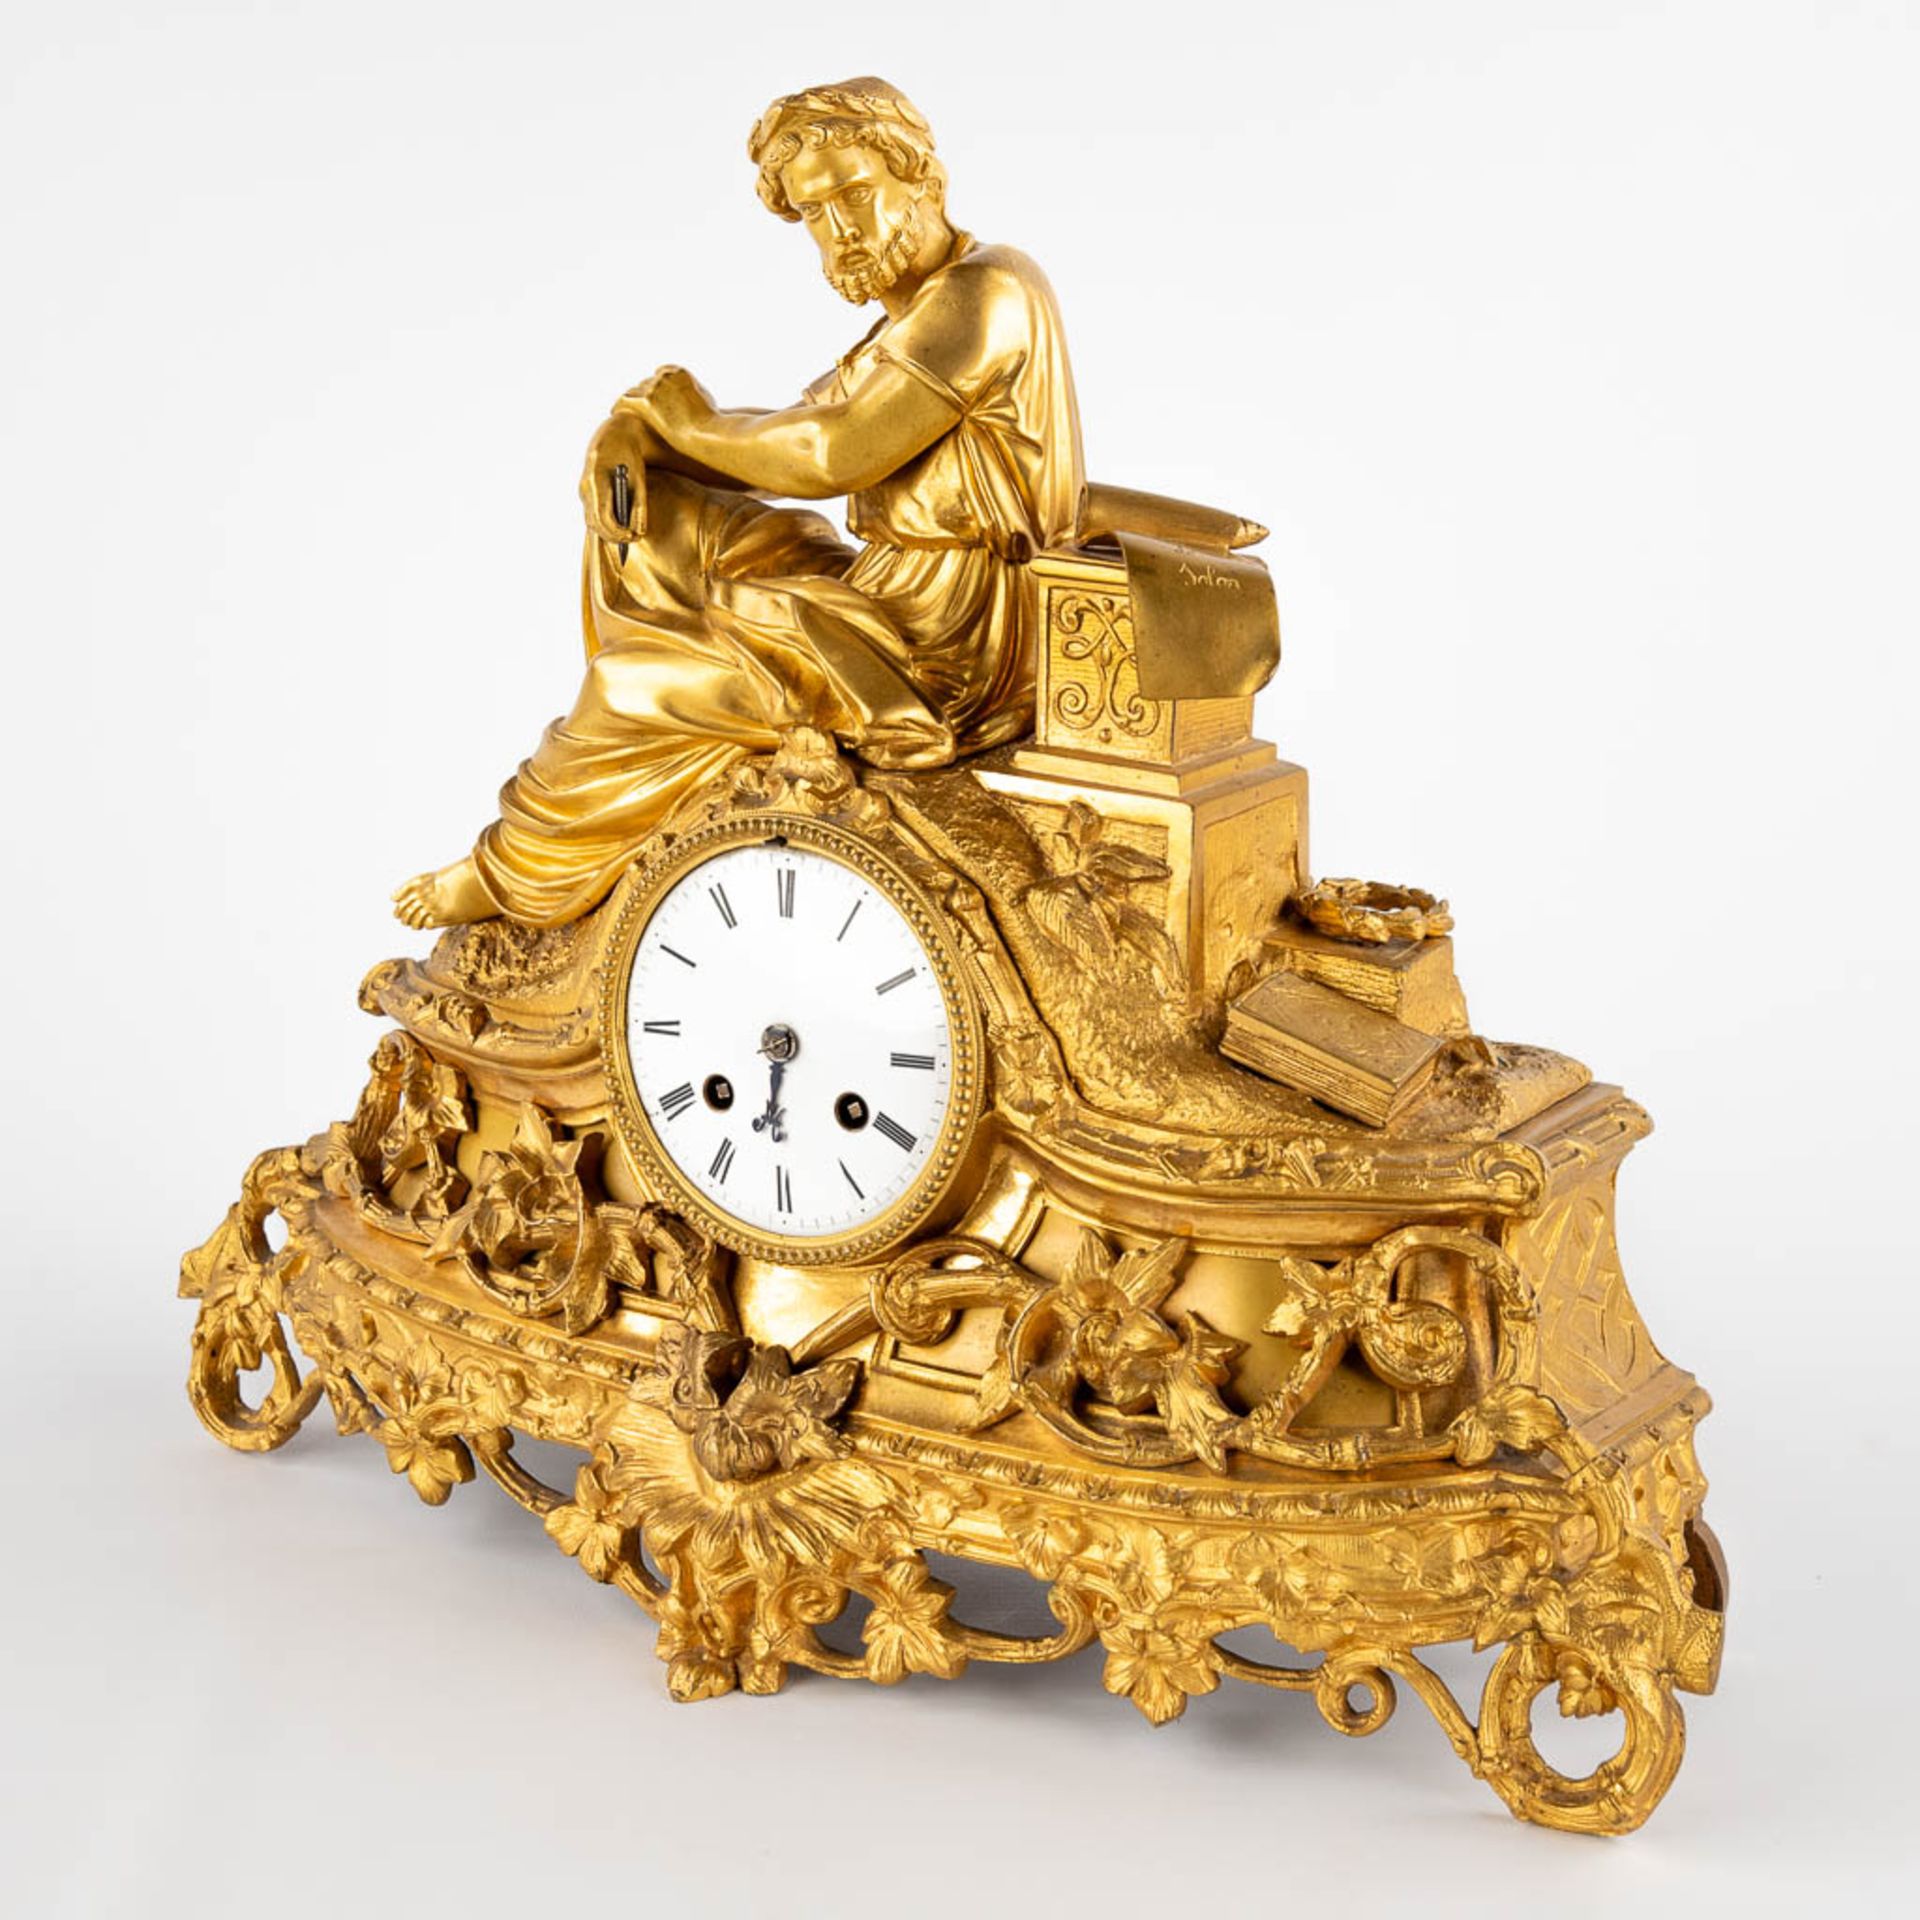 A mantle clock 'Lois De Solon', gilt bronze. France, 19th C. (D:14 x W:38 x H:52 cm) - Image 3 of 13